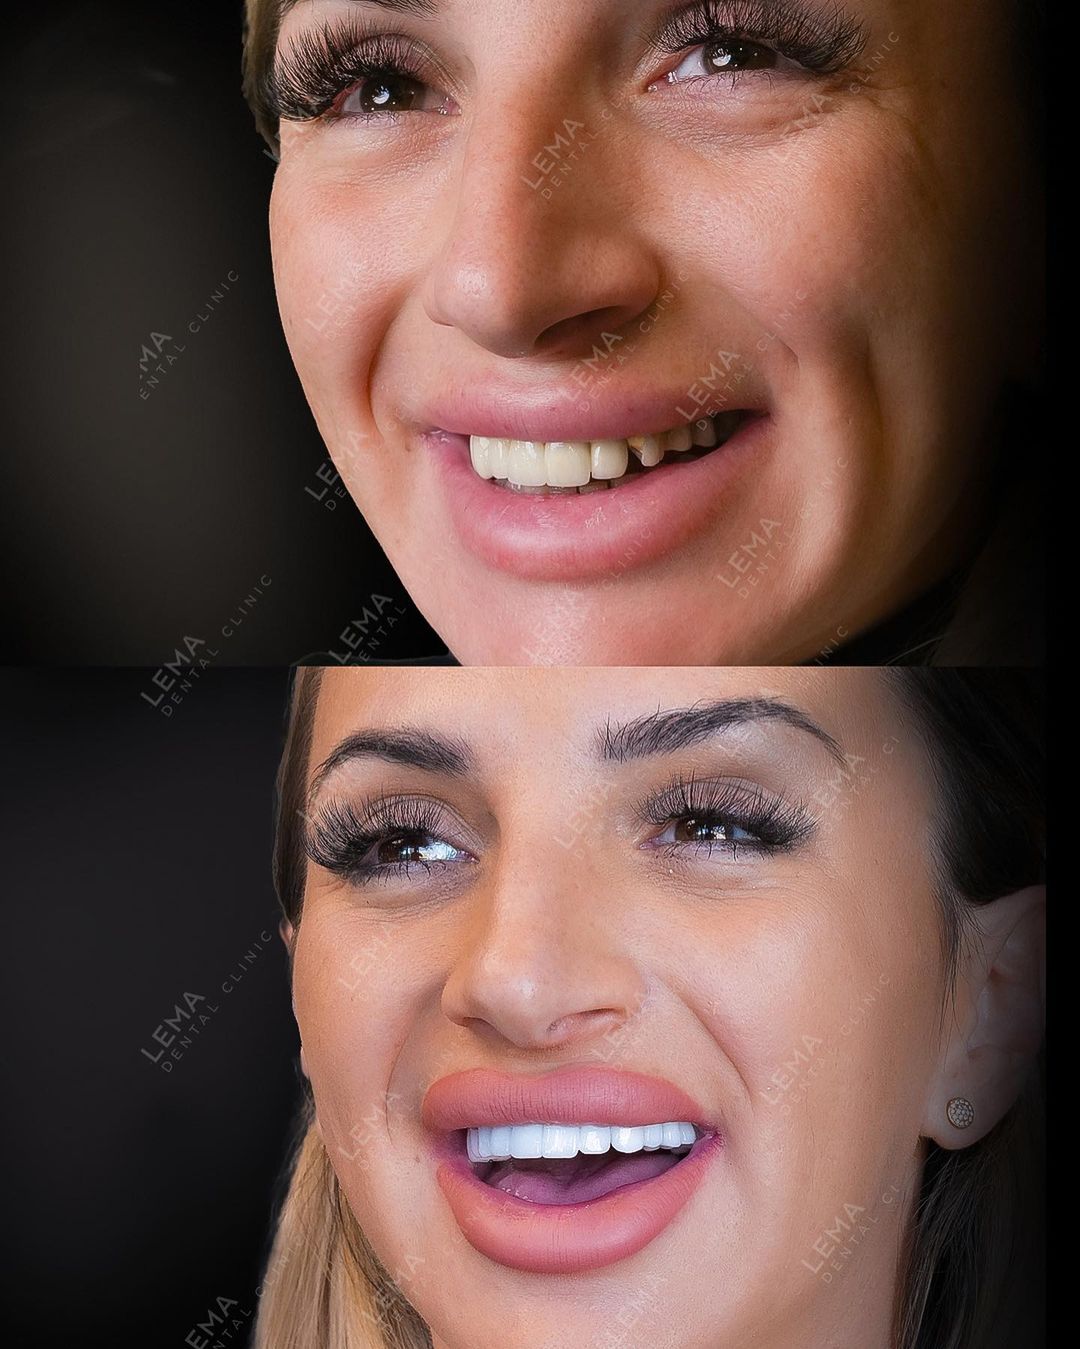 dental veneers